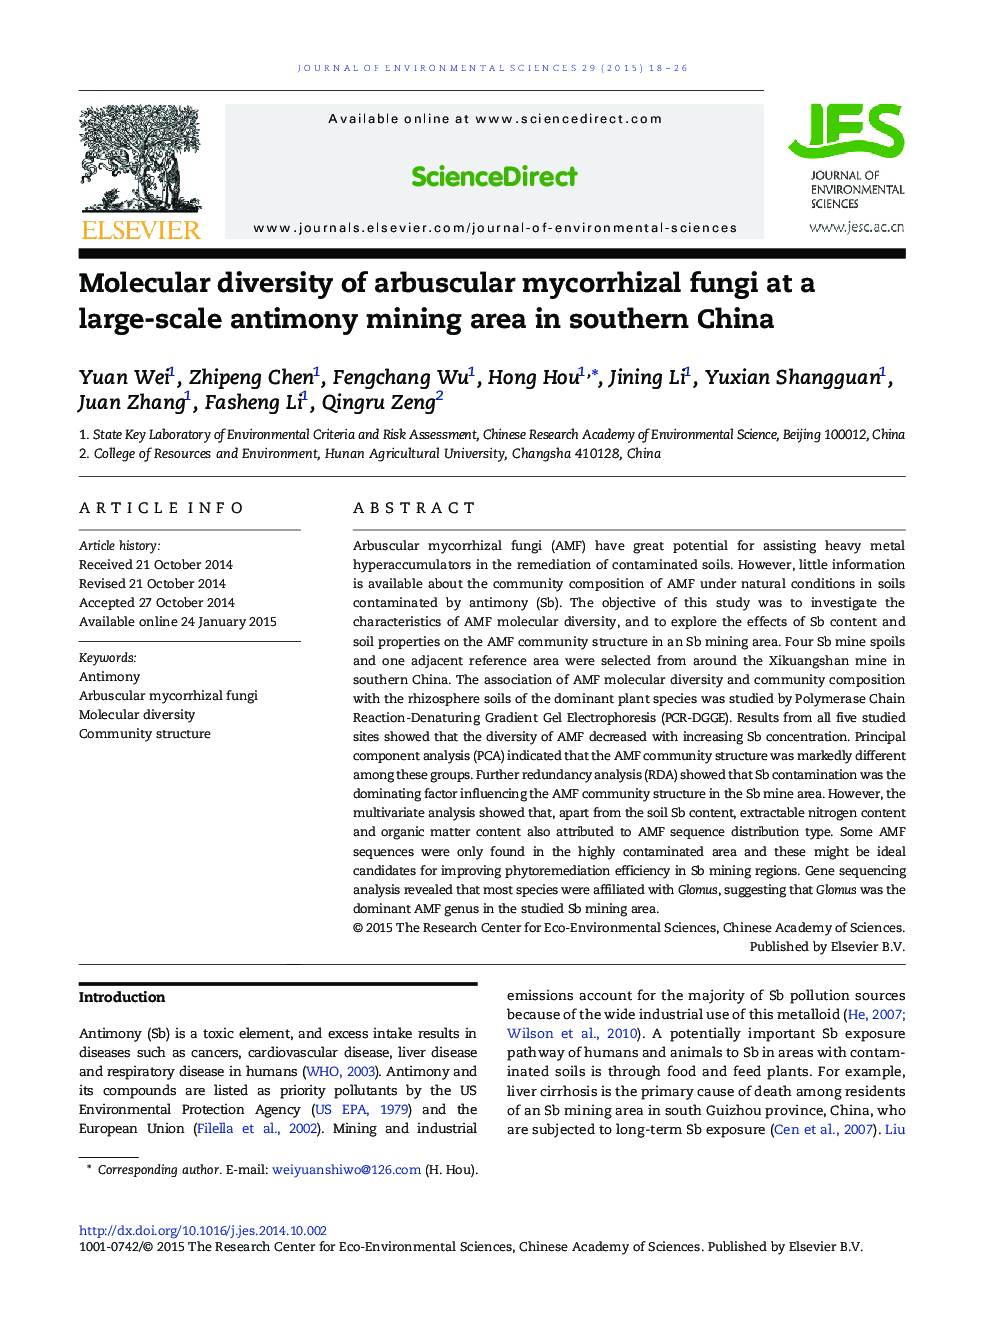 تنوع مولکولی قارچ های میکوریزا آربوسکولار در منطقه سنگ معدن آنتیموان در جنوب چین 